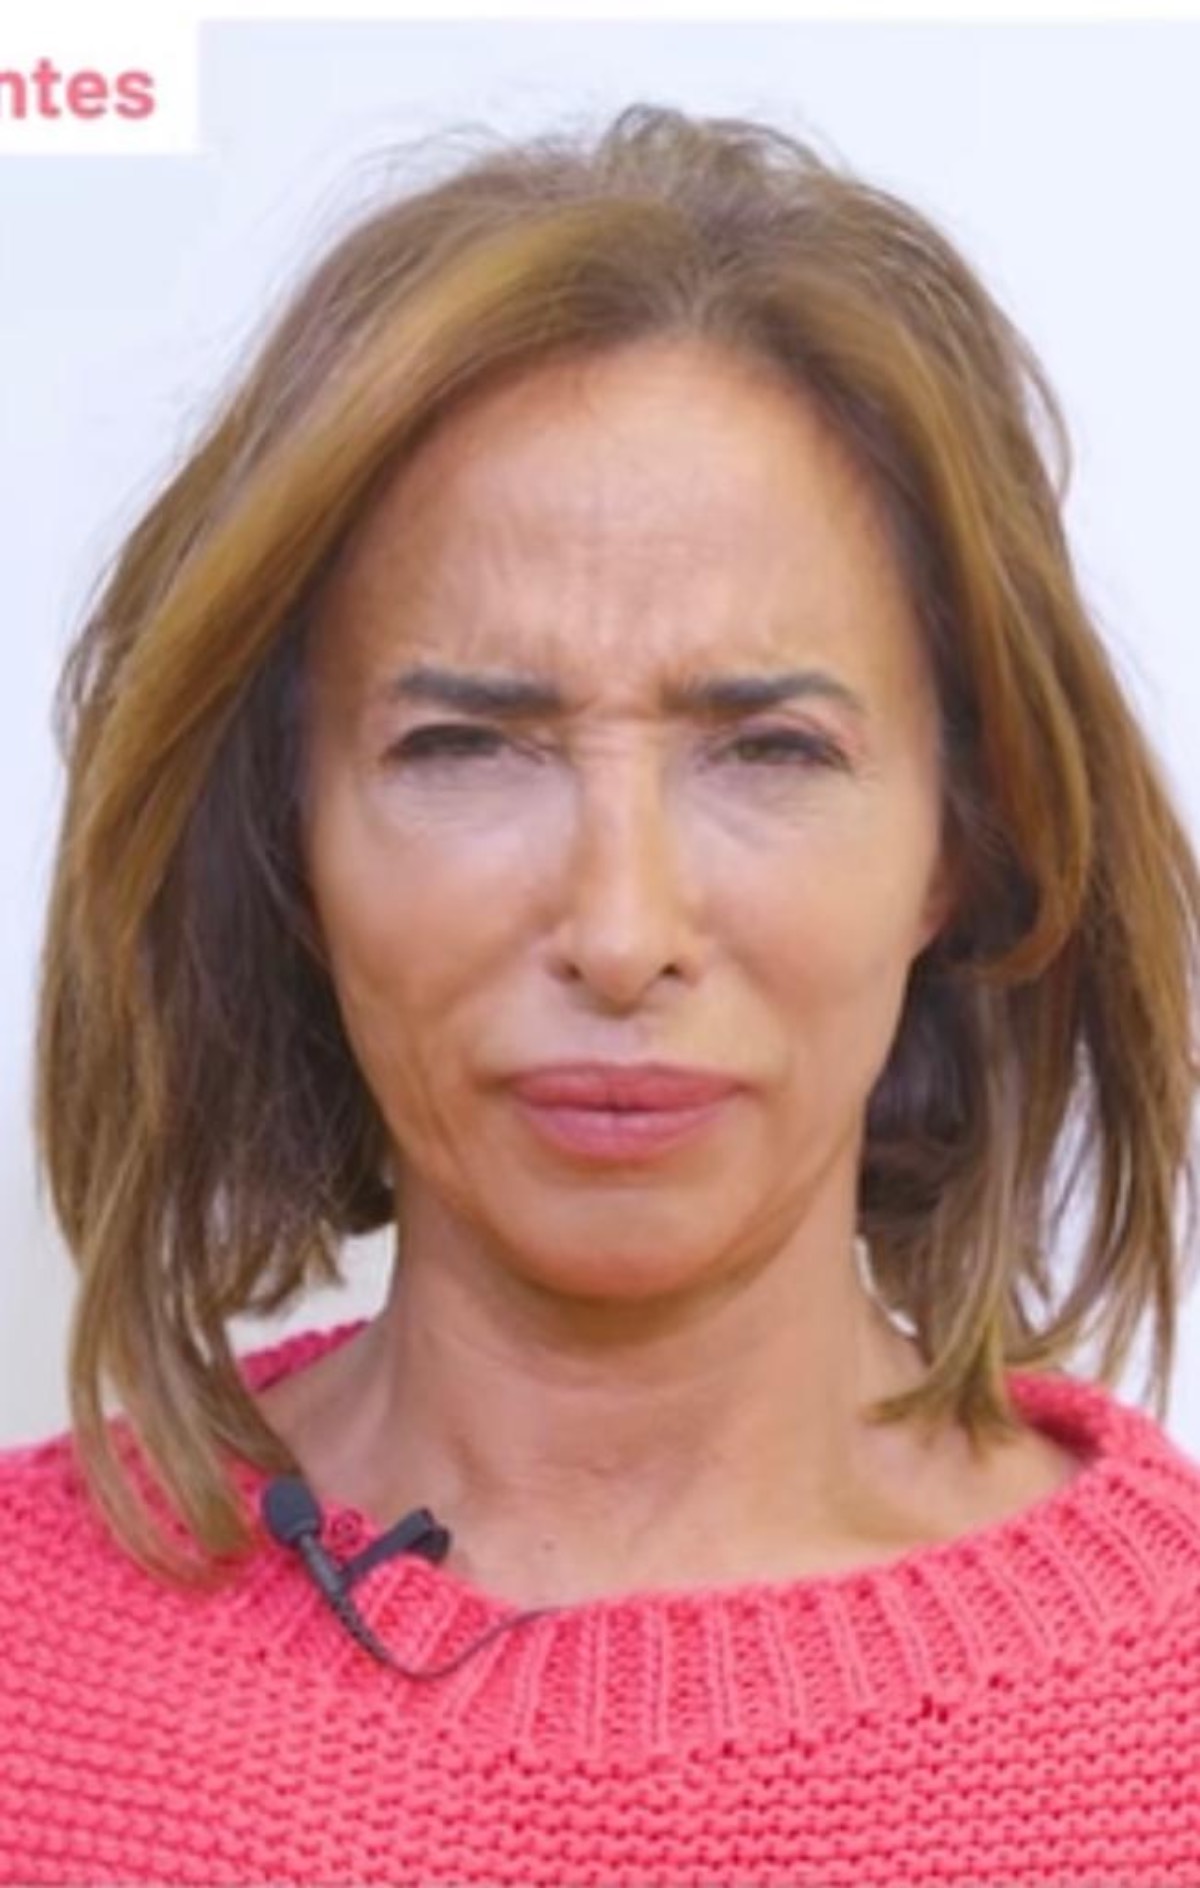 María Patiño rostro con arrugas